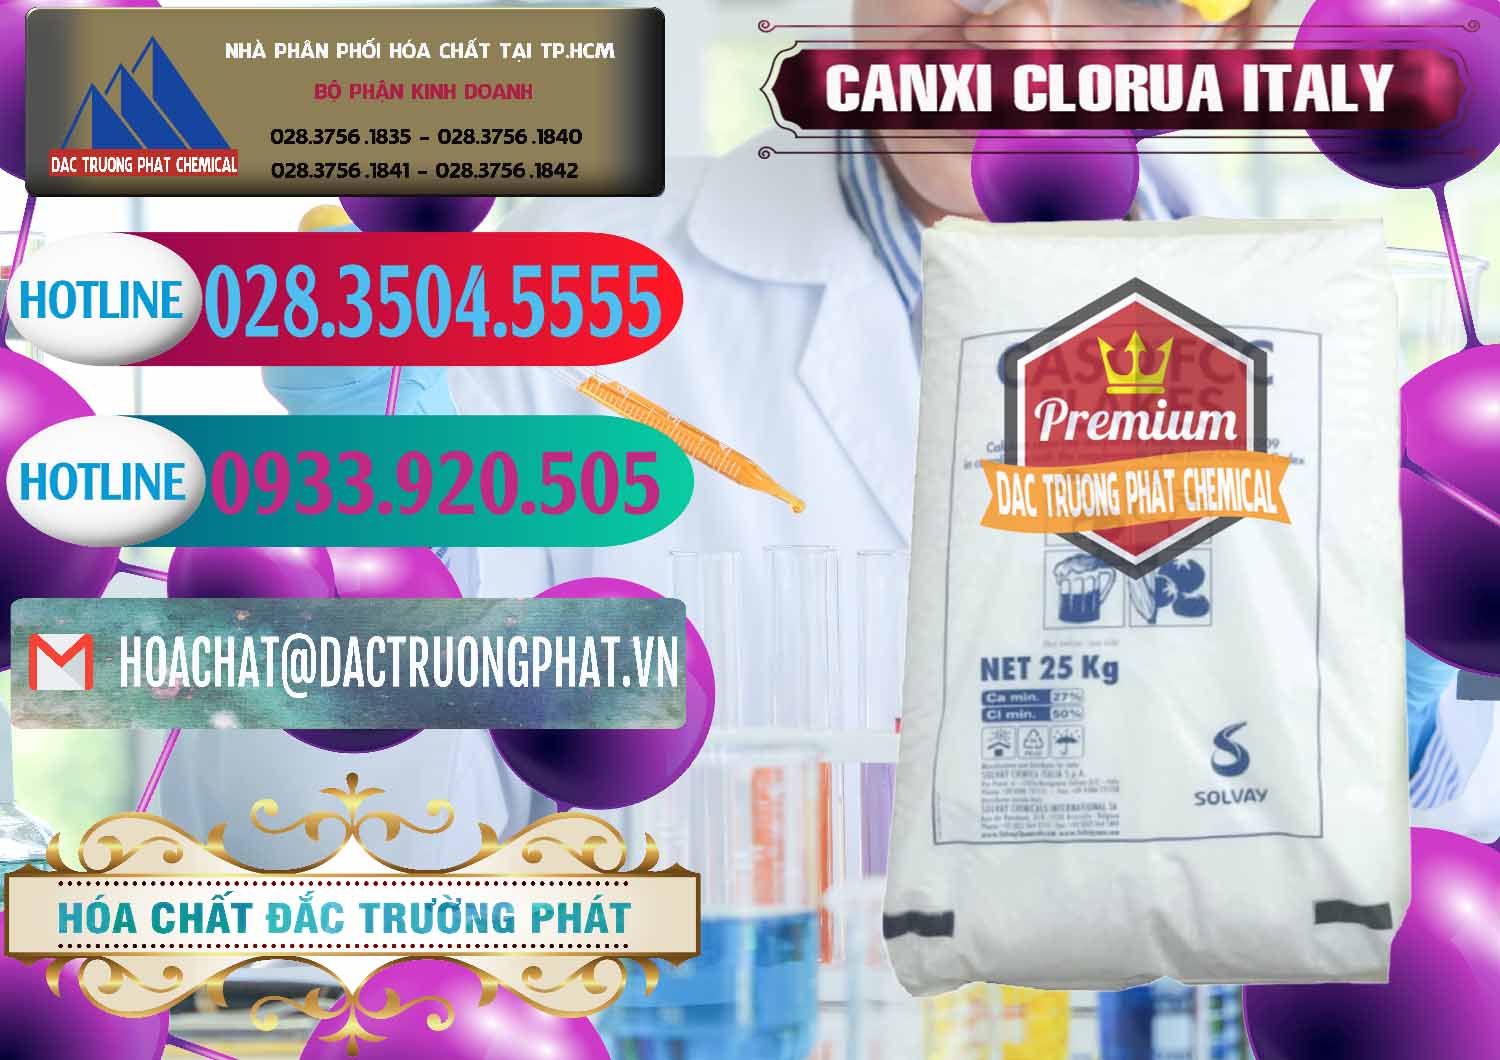 Đơn vị chuyên bán & cung cấp CaCl2 – Canxi Clorua Food Grade Ý Italy - 0435 - Cty chuyên kinh doanh ( cung cấp ) hóa chất tại TP.HCM - truongphat.vn